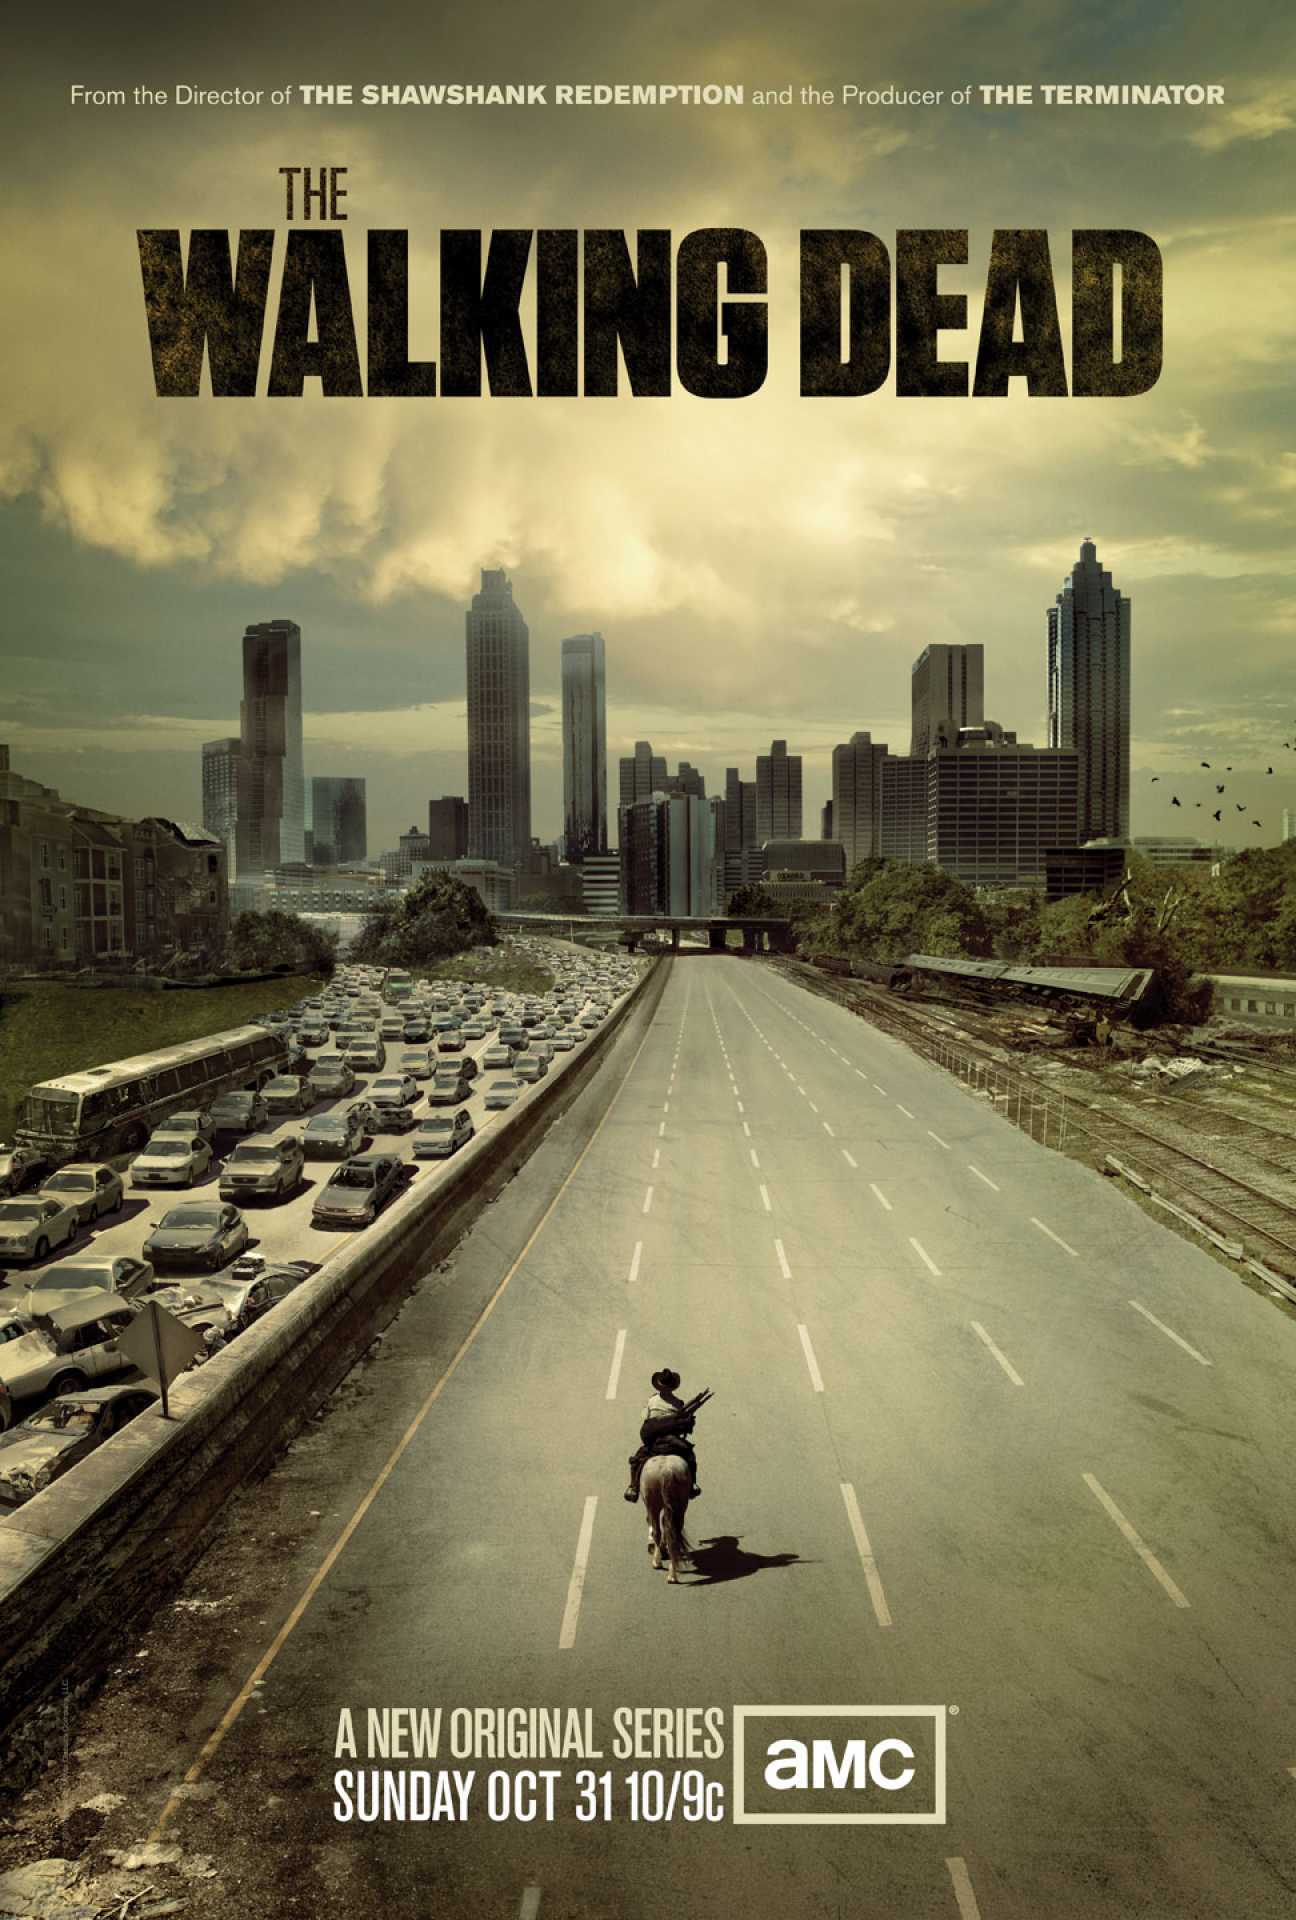 Tales of the Walking Dead - Wikipedia